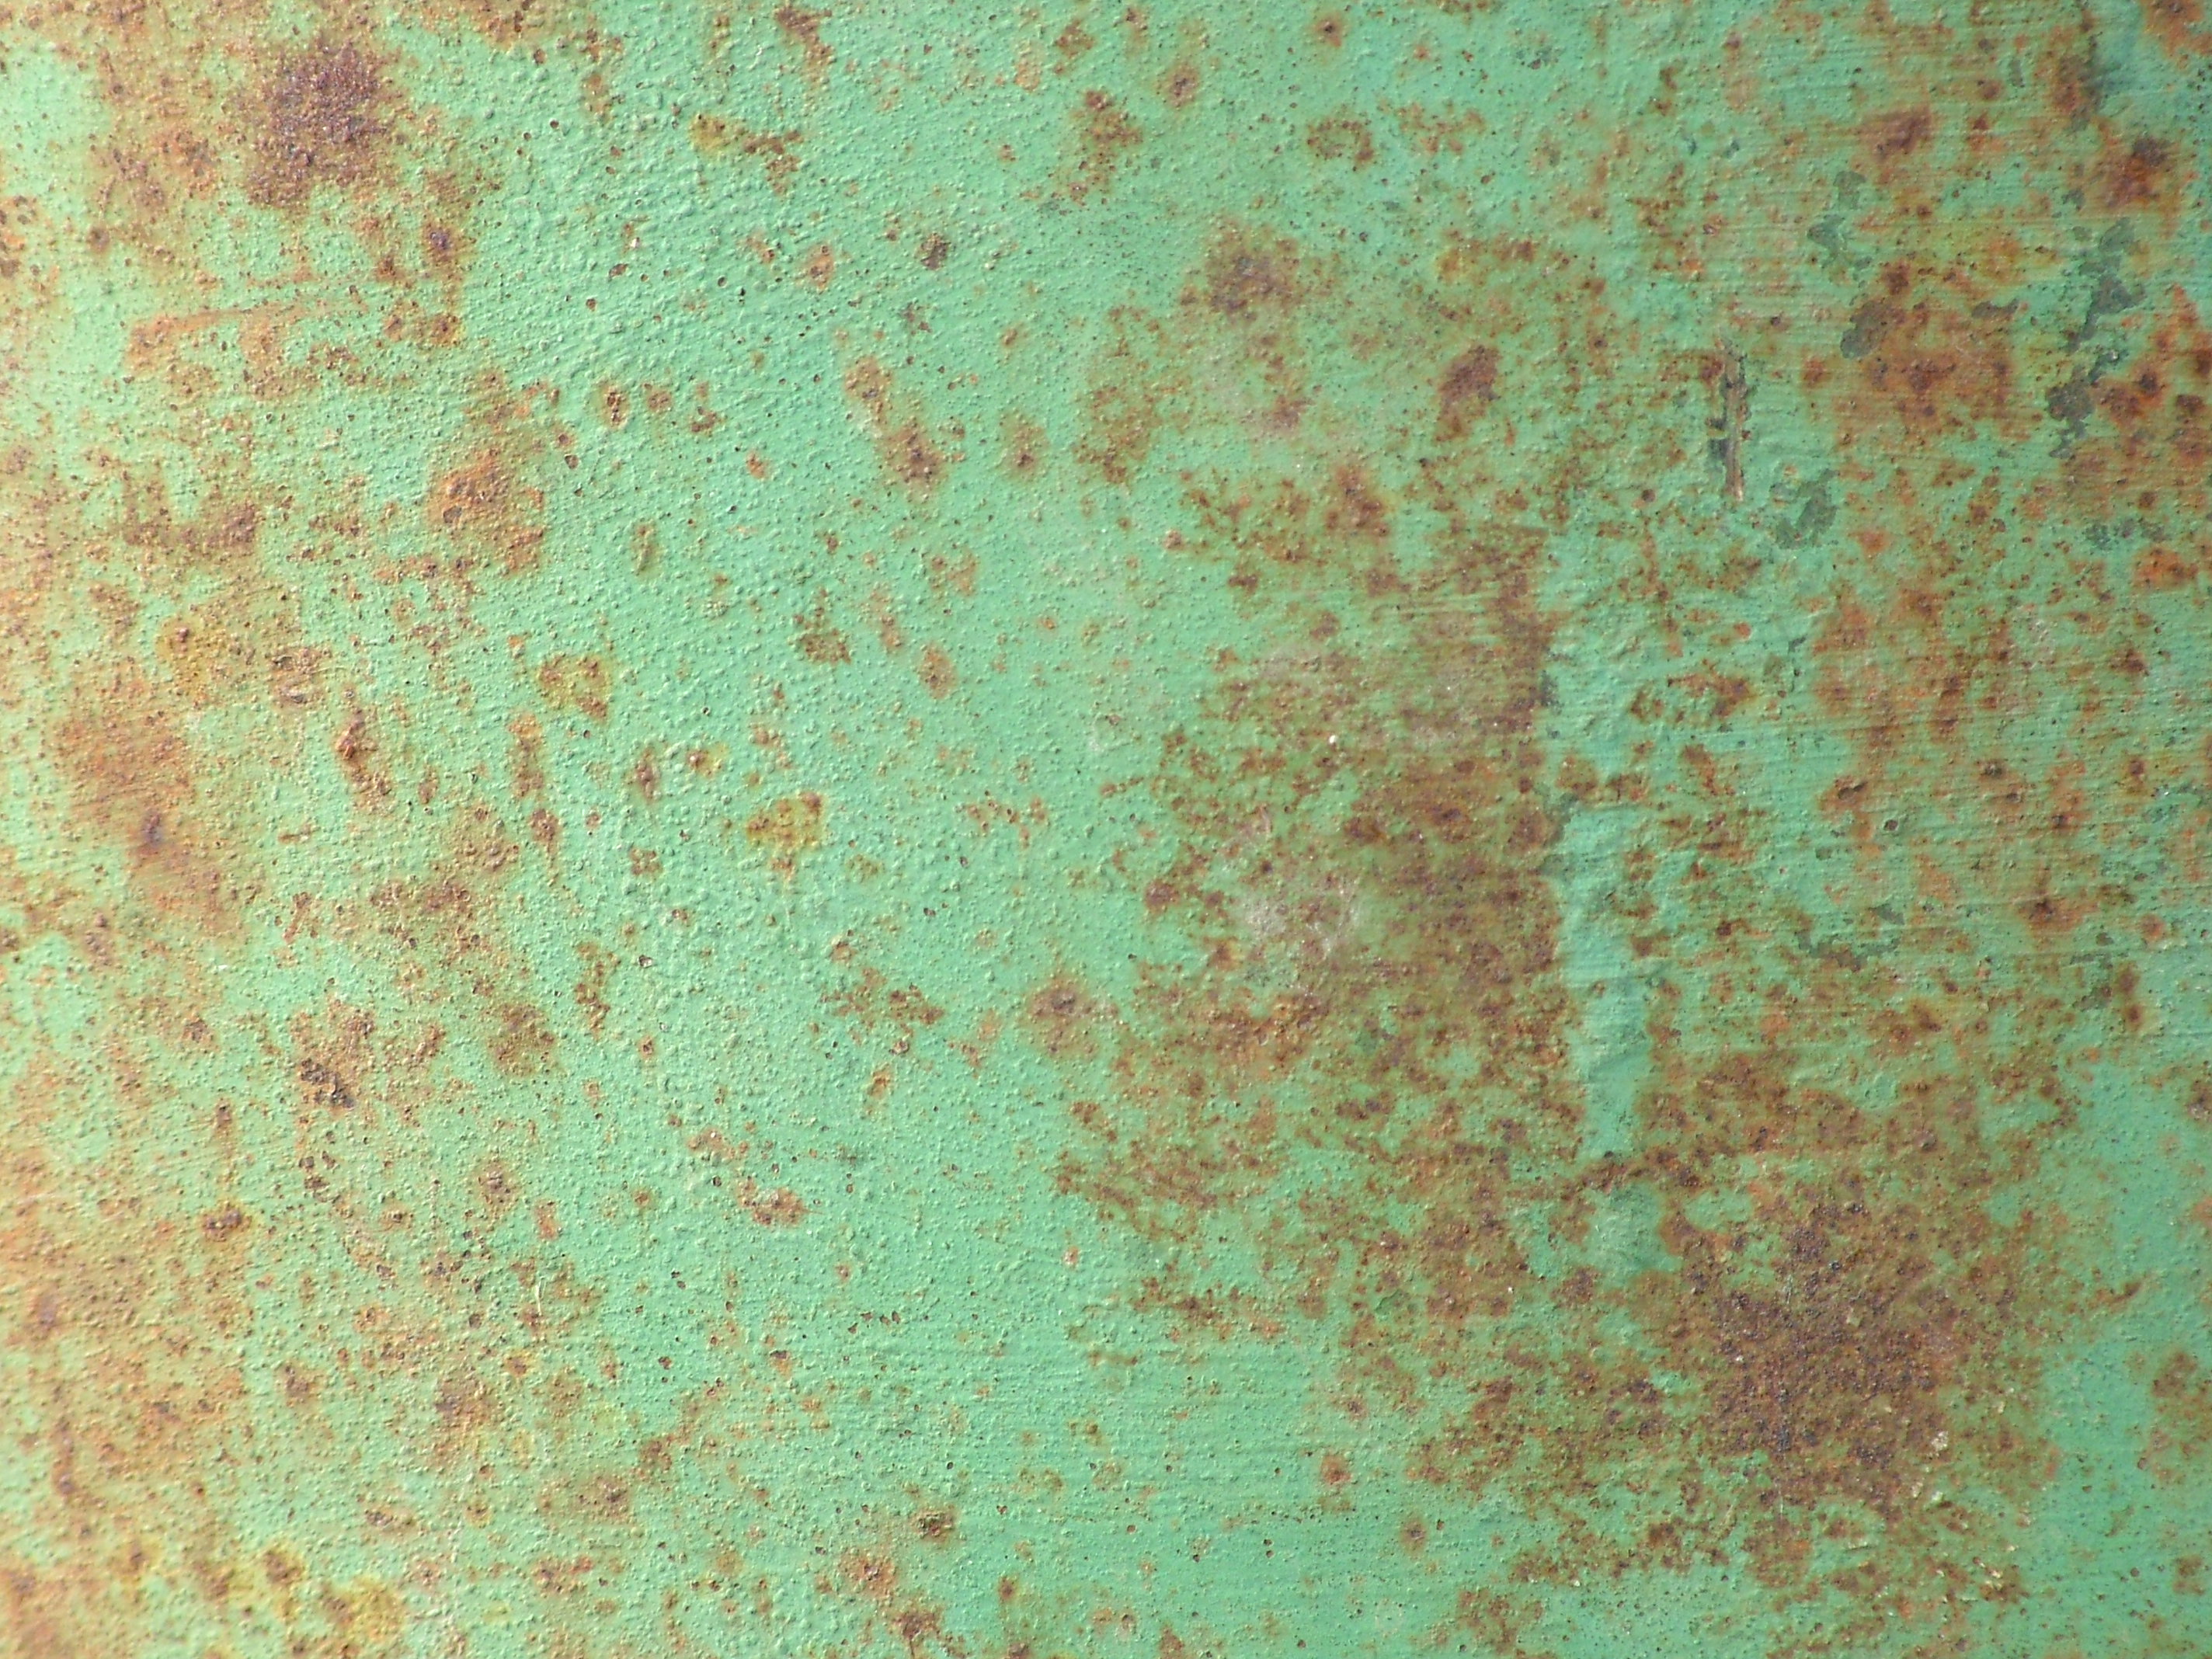 Green rust фото 73